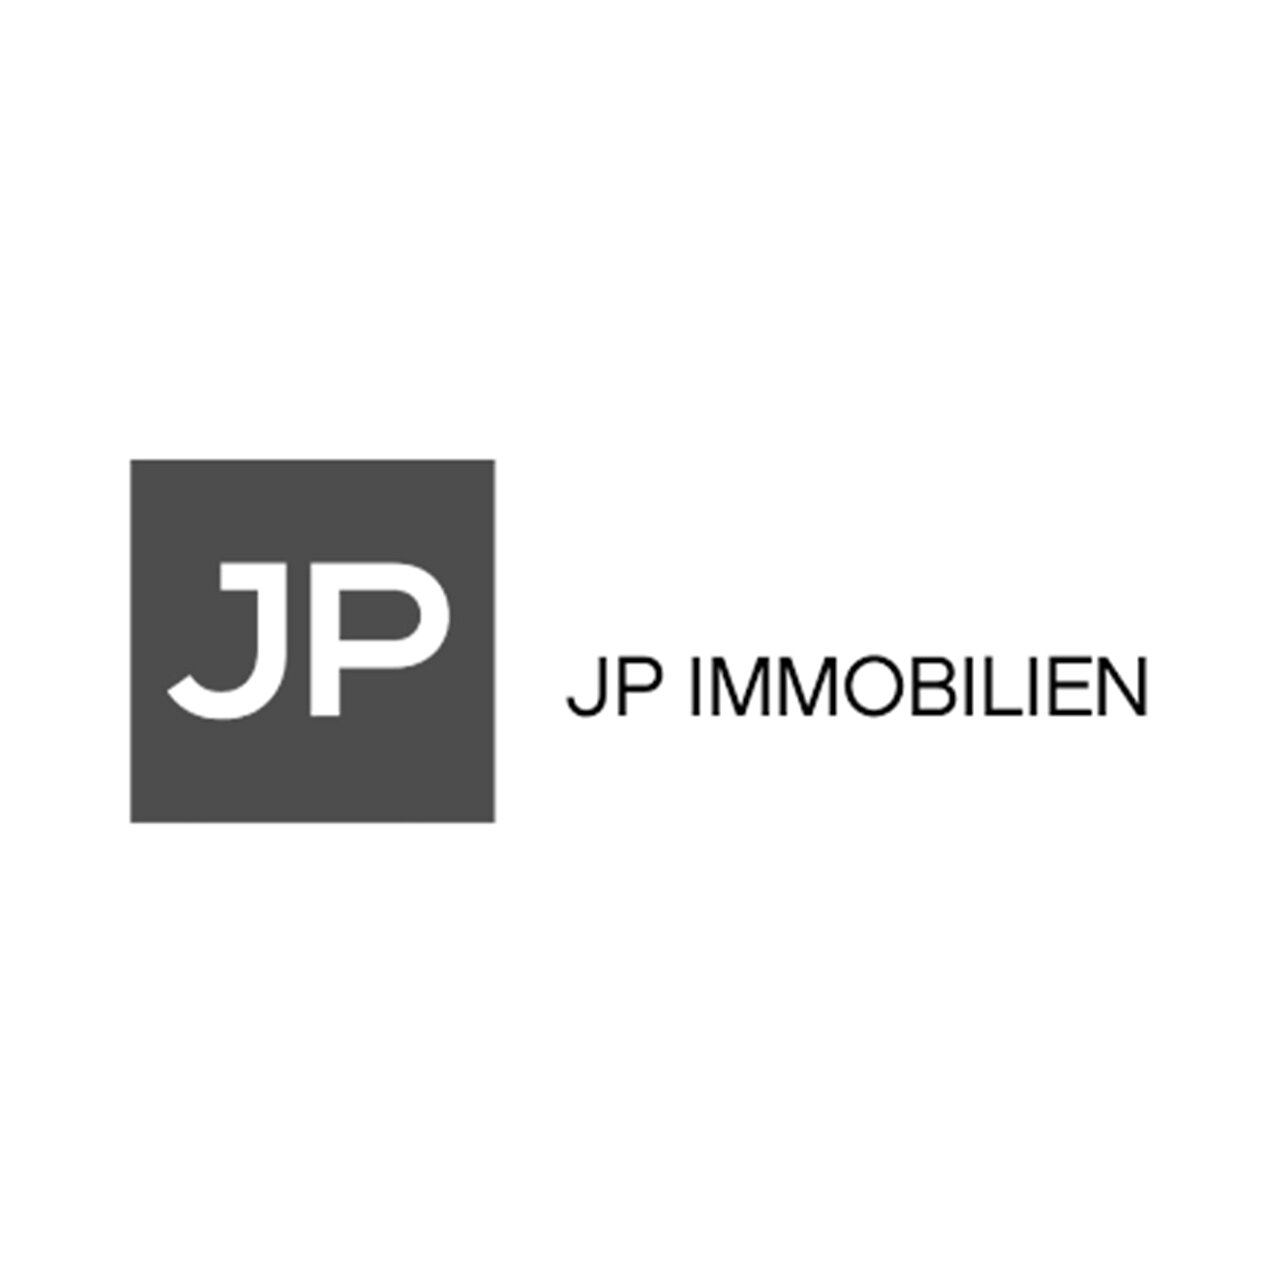 JP Immobilien.jpg